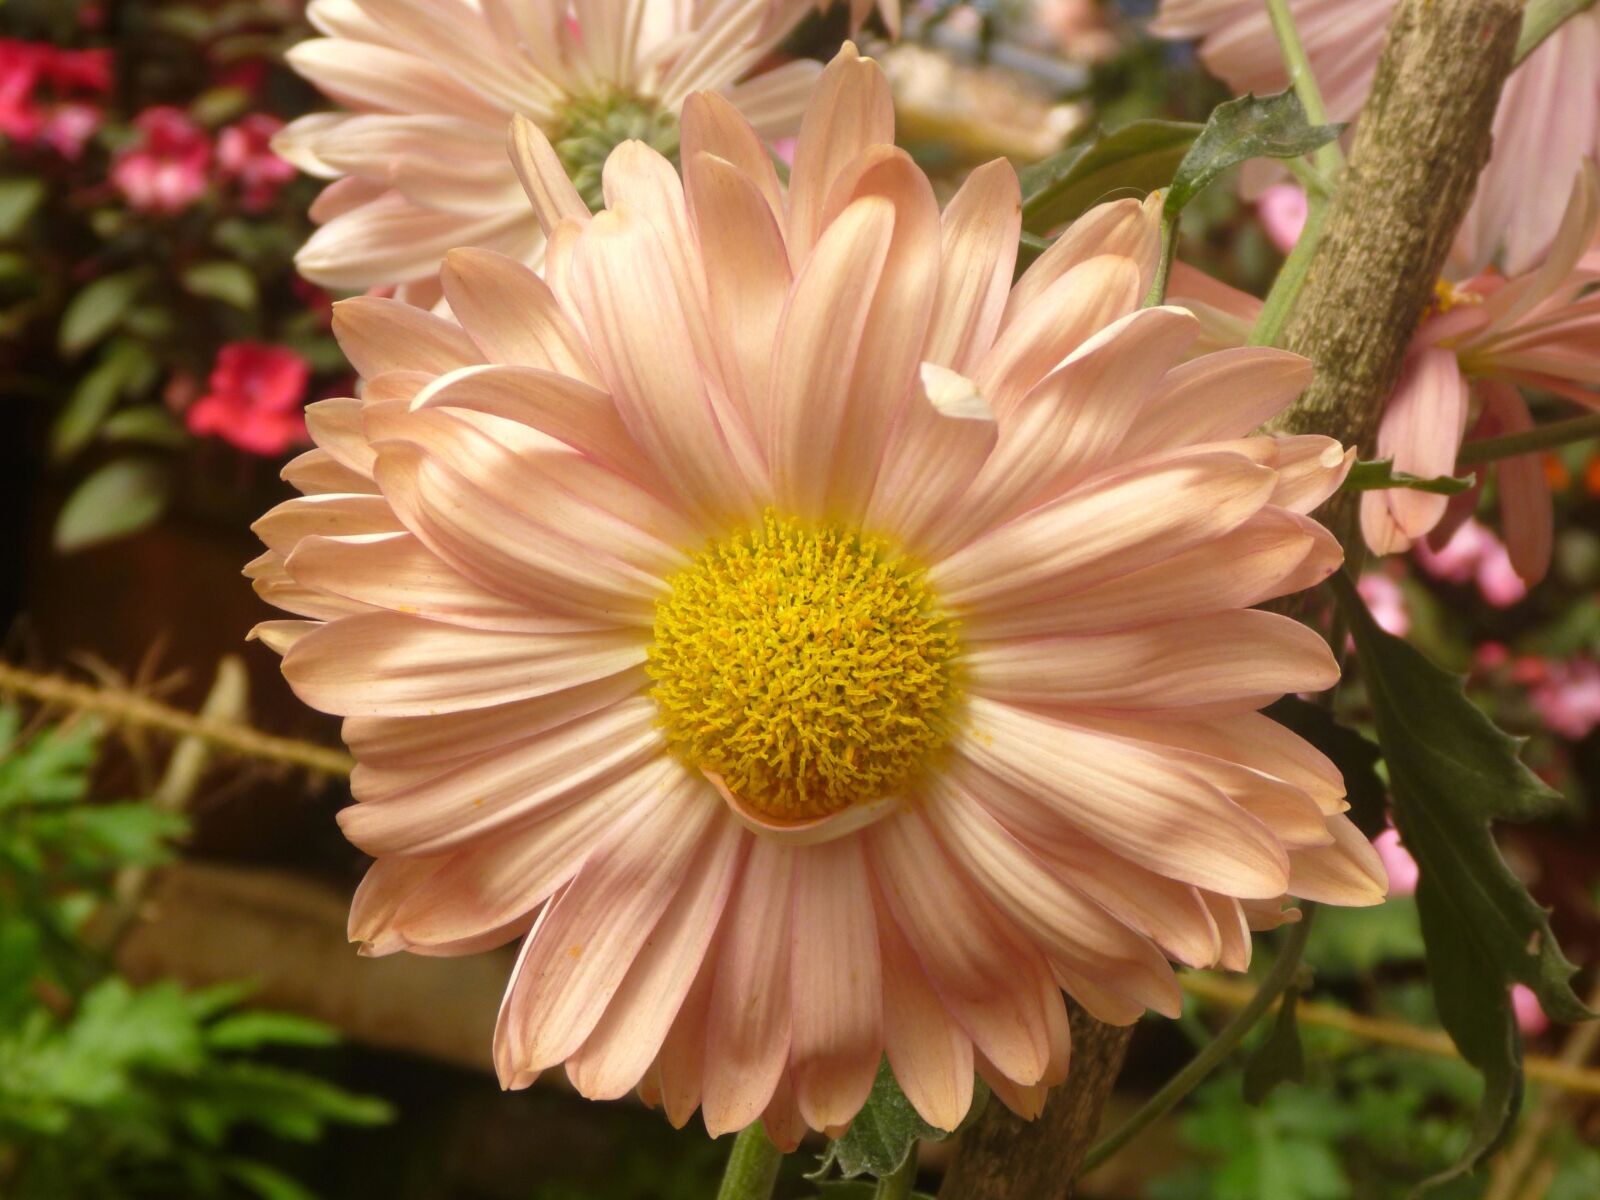 Panasonic DMC-TS2 sample photo. Beautiful, flower, daisy, blossom photography